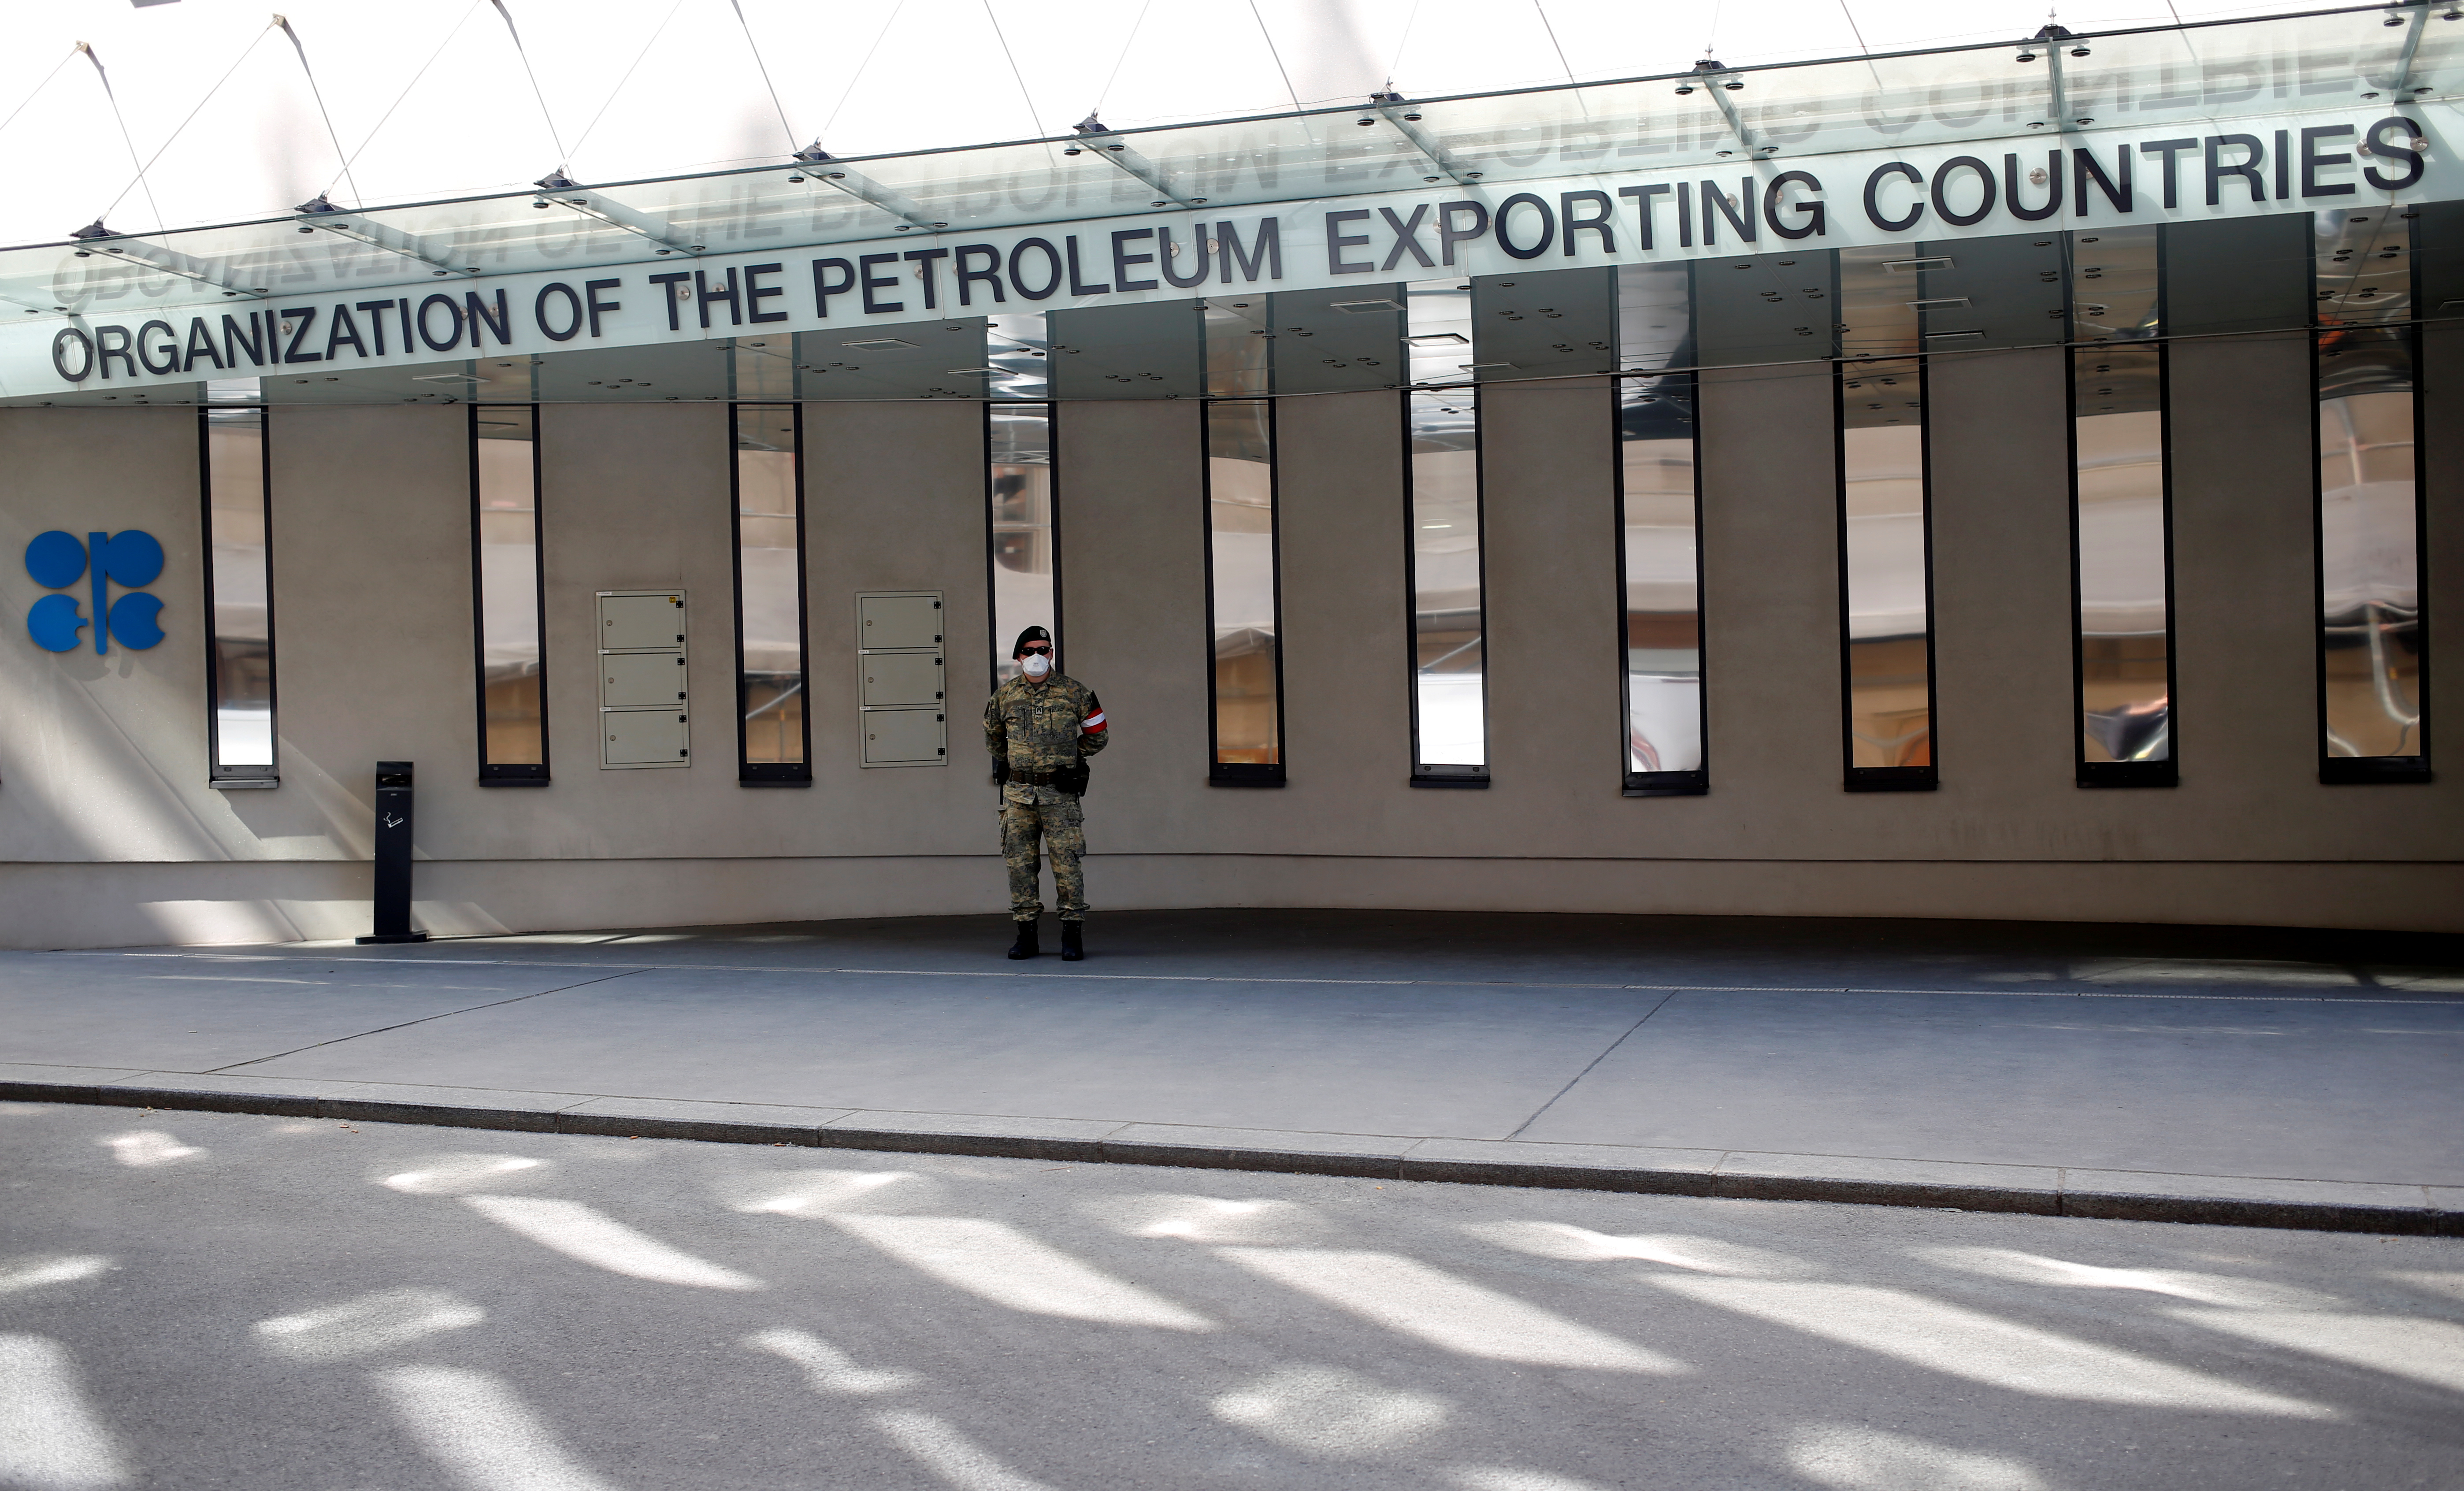 El ministro de Petróleo iraquí espera un acuerdo para aumentar sus exportaciones de crudo